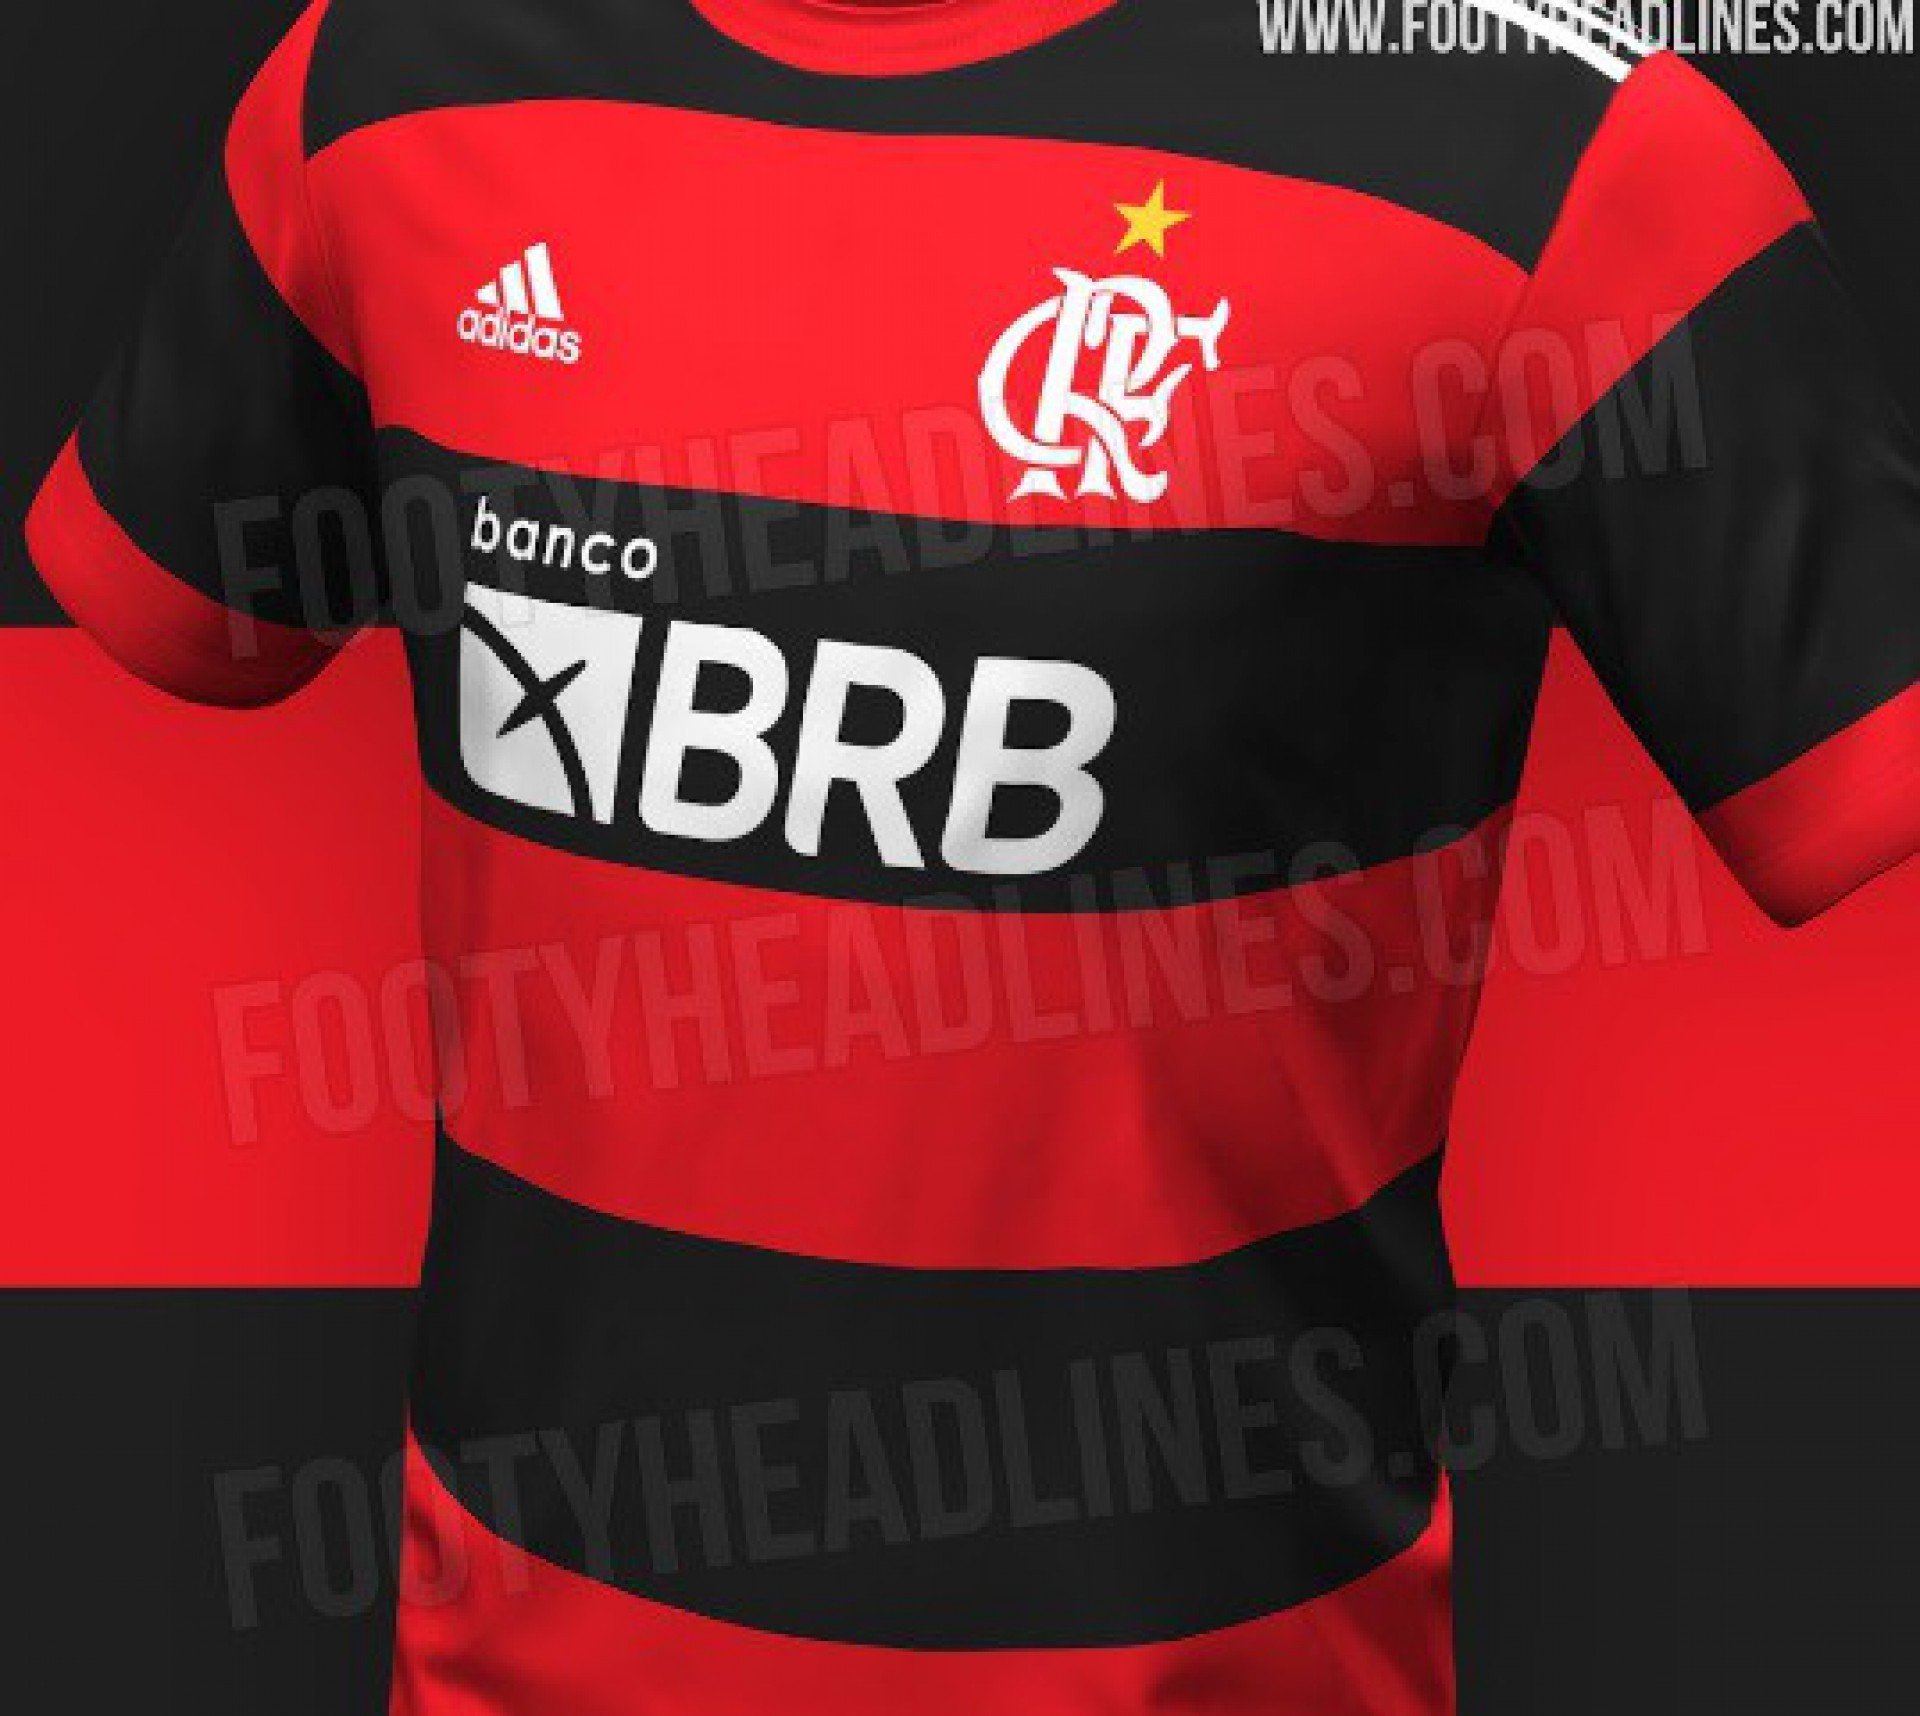 Provável camisa 1 do Flamengo para 2023 - Footy Headlines